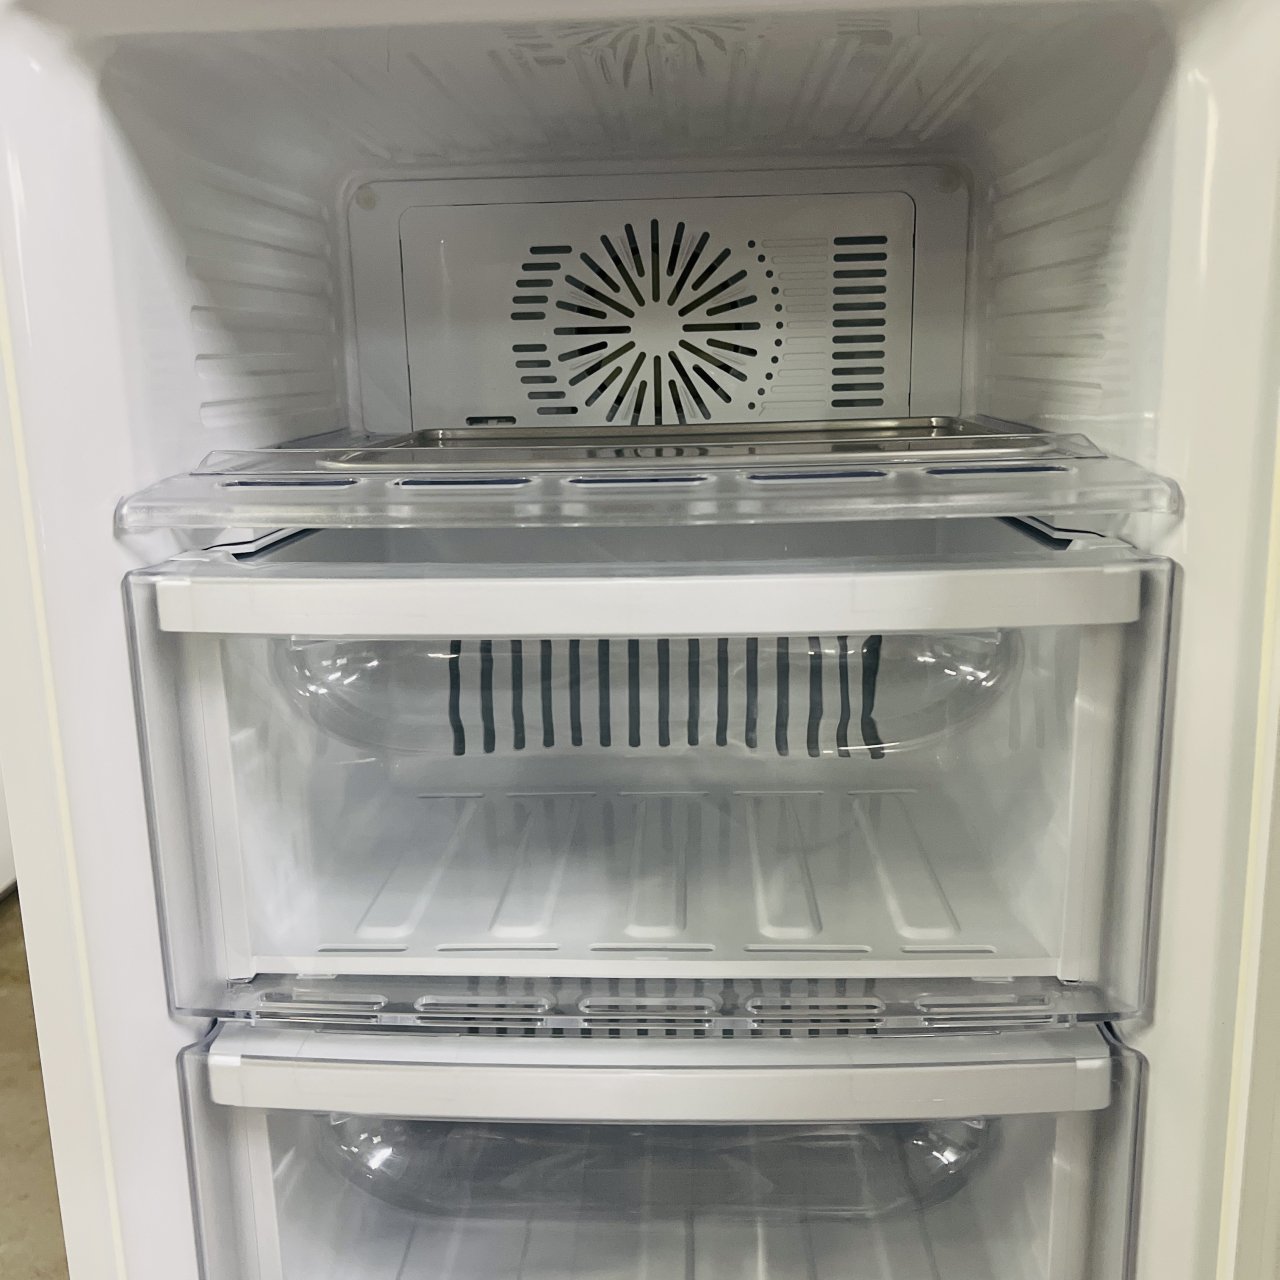 三菱電機 冷凍庫 MITSUBISHI MF-U12T-W - 冷蔵庫・冷凍庫